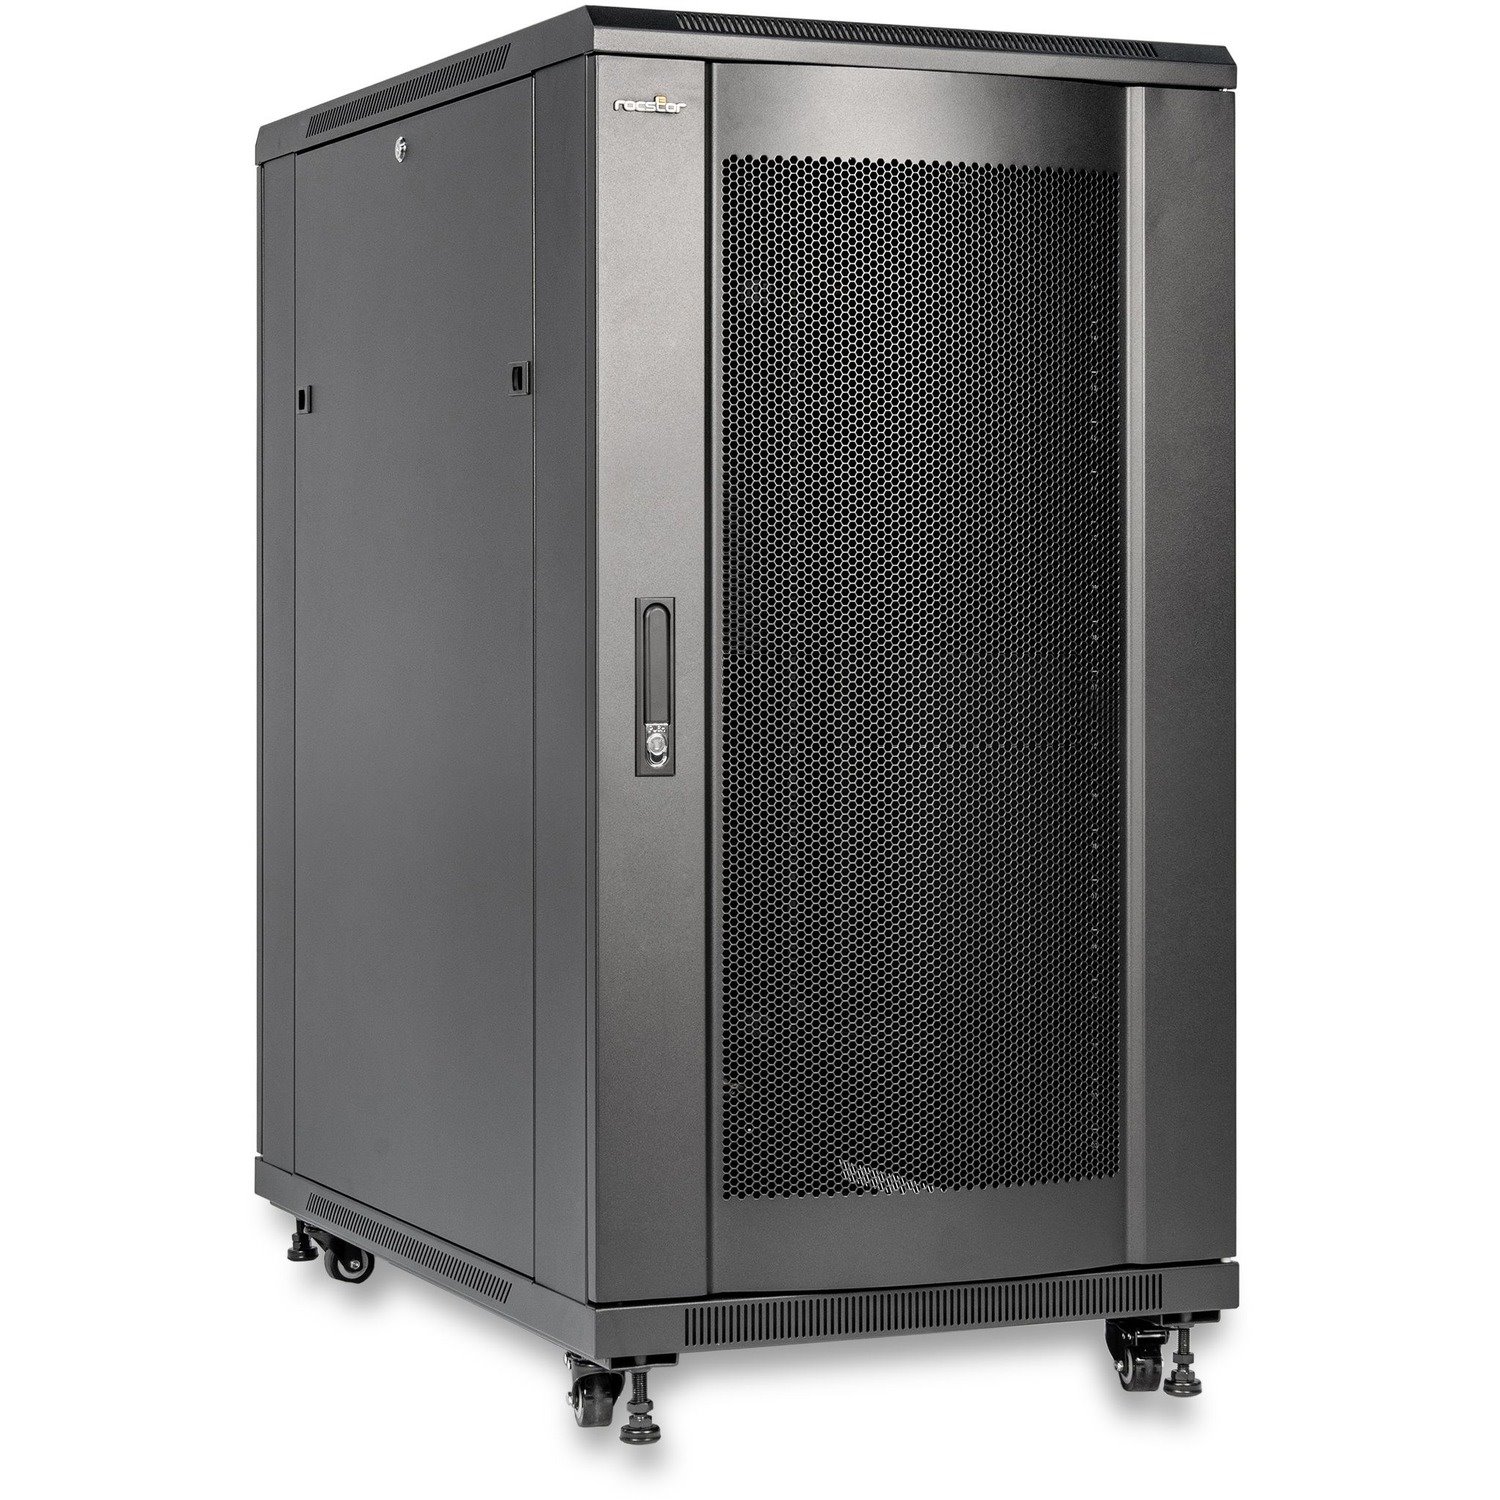 Rocstor SolidRack R3110 Server Rack Cabinet - 19 in. Deep Enclosure - 22U